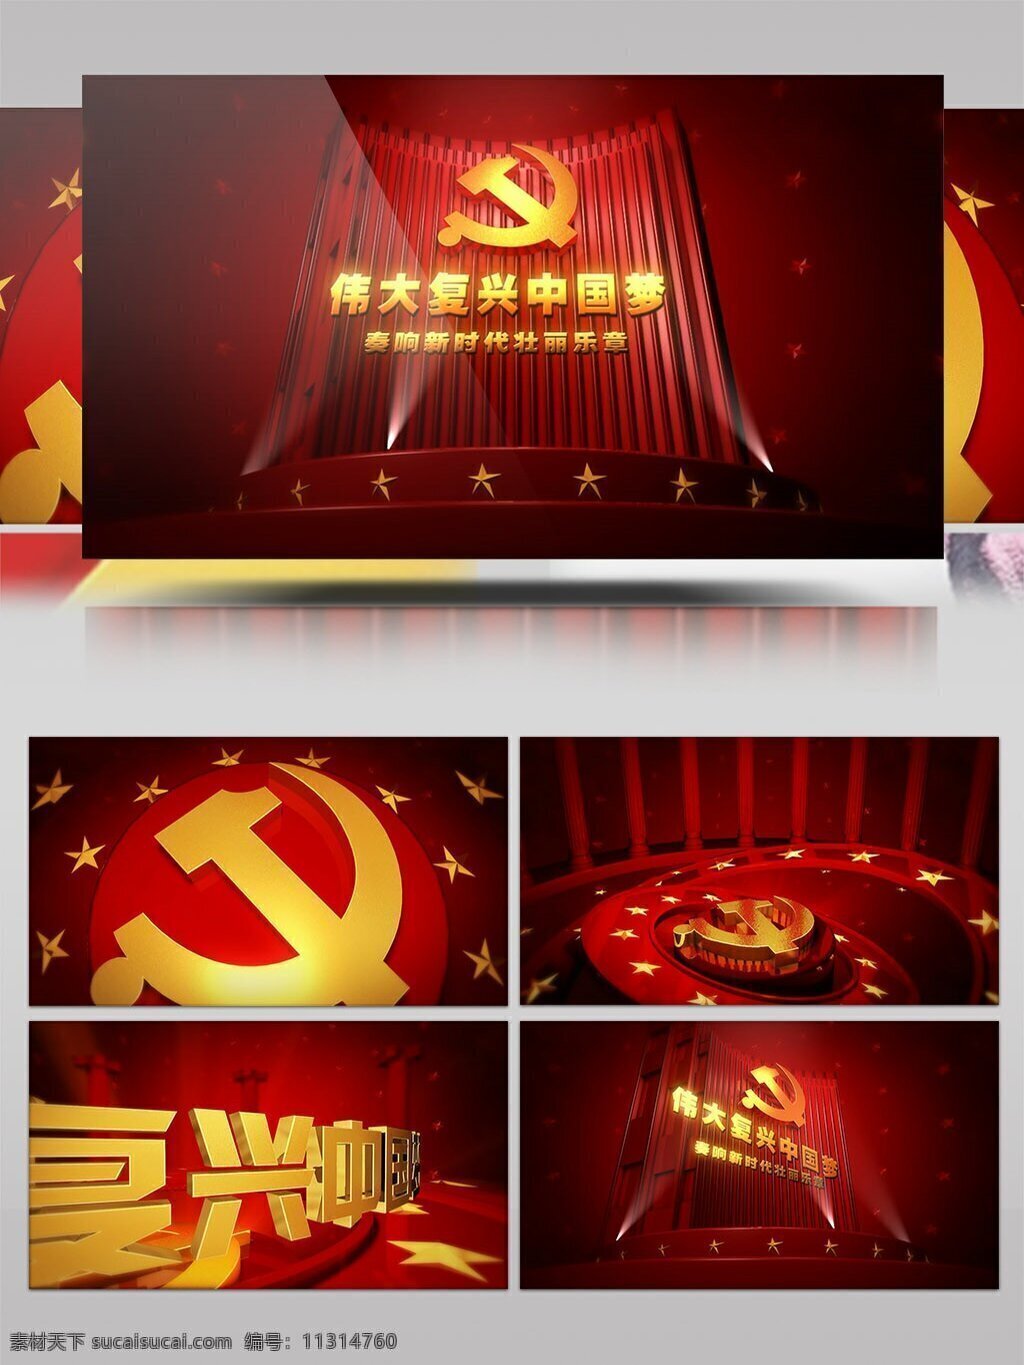 伟大 复兴 中国 梦 党政 宣传片 ae 模板 红色 大气 中国梦 党建 党徽 展示 宣传 震撼